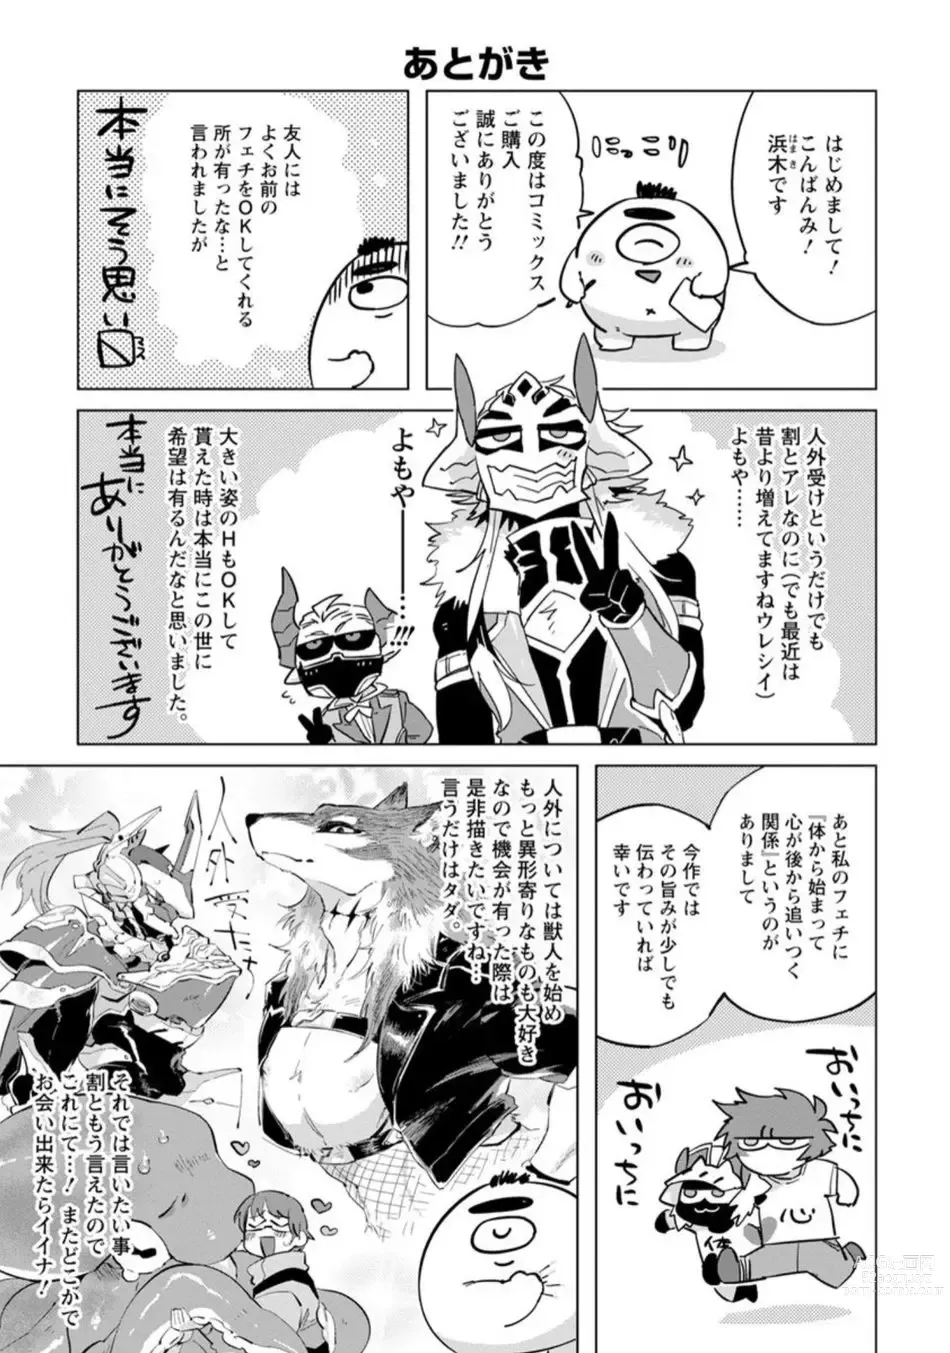 Page 200 of manga Maou-sama wa Yuusha no Ken de Midaretai